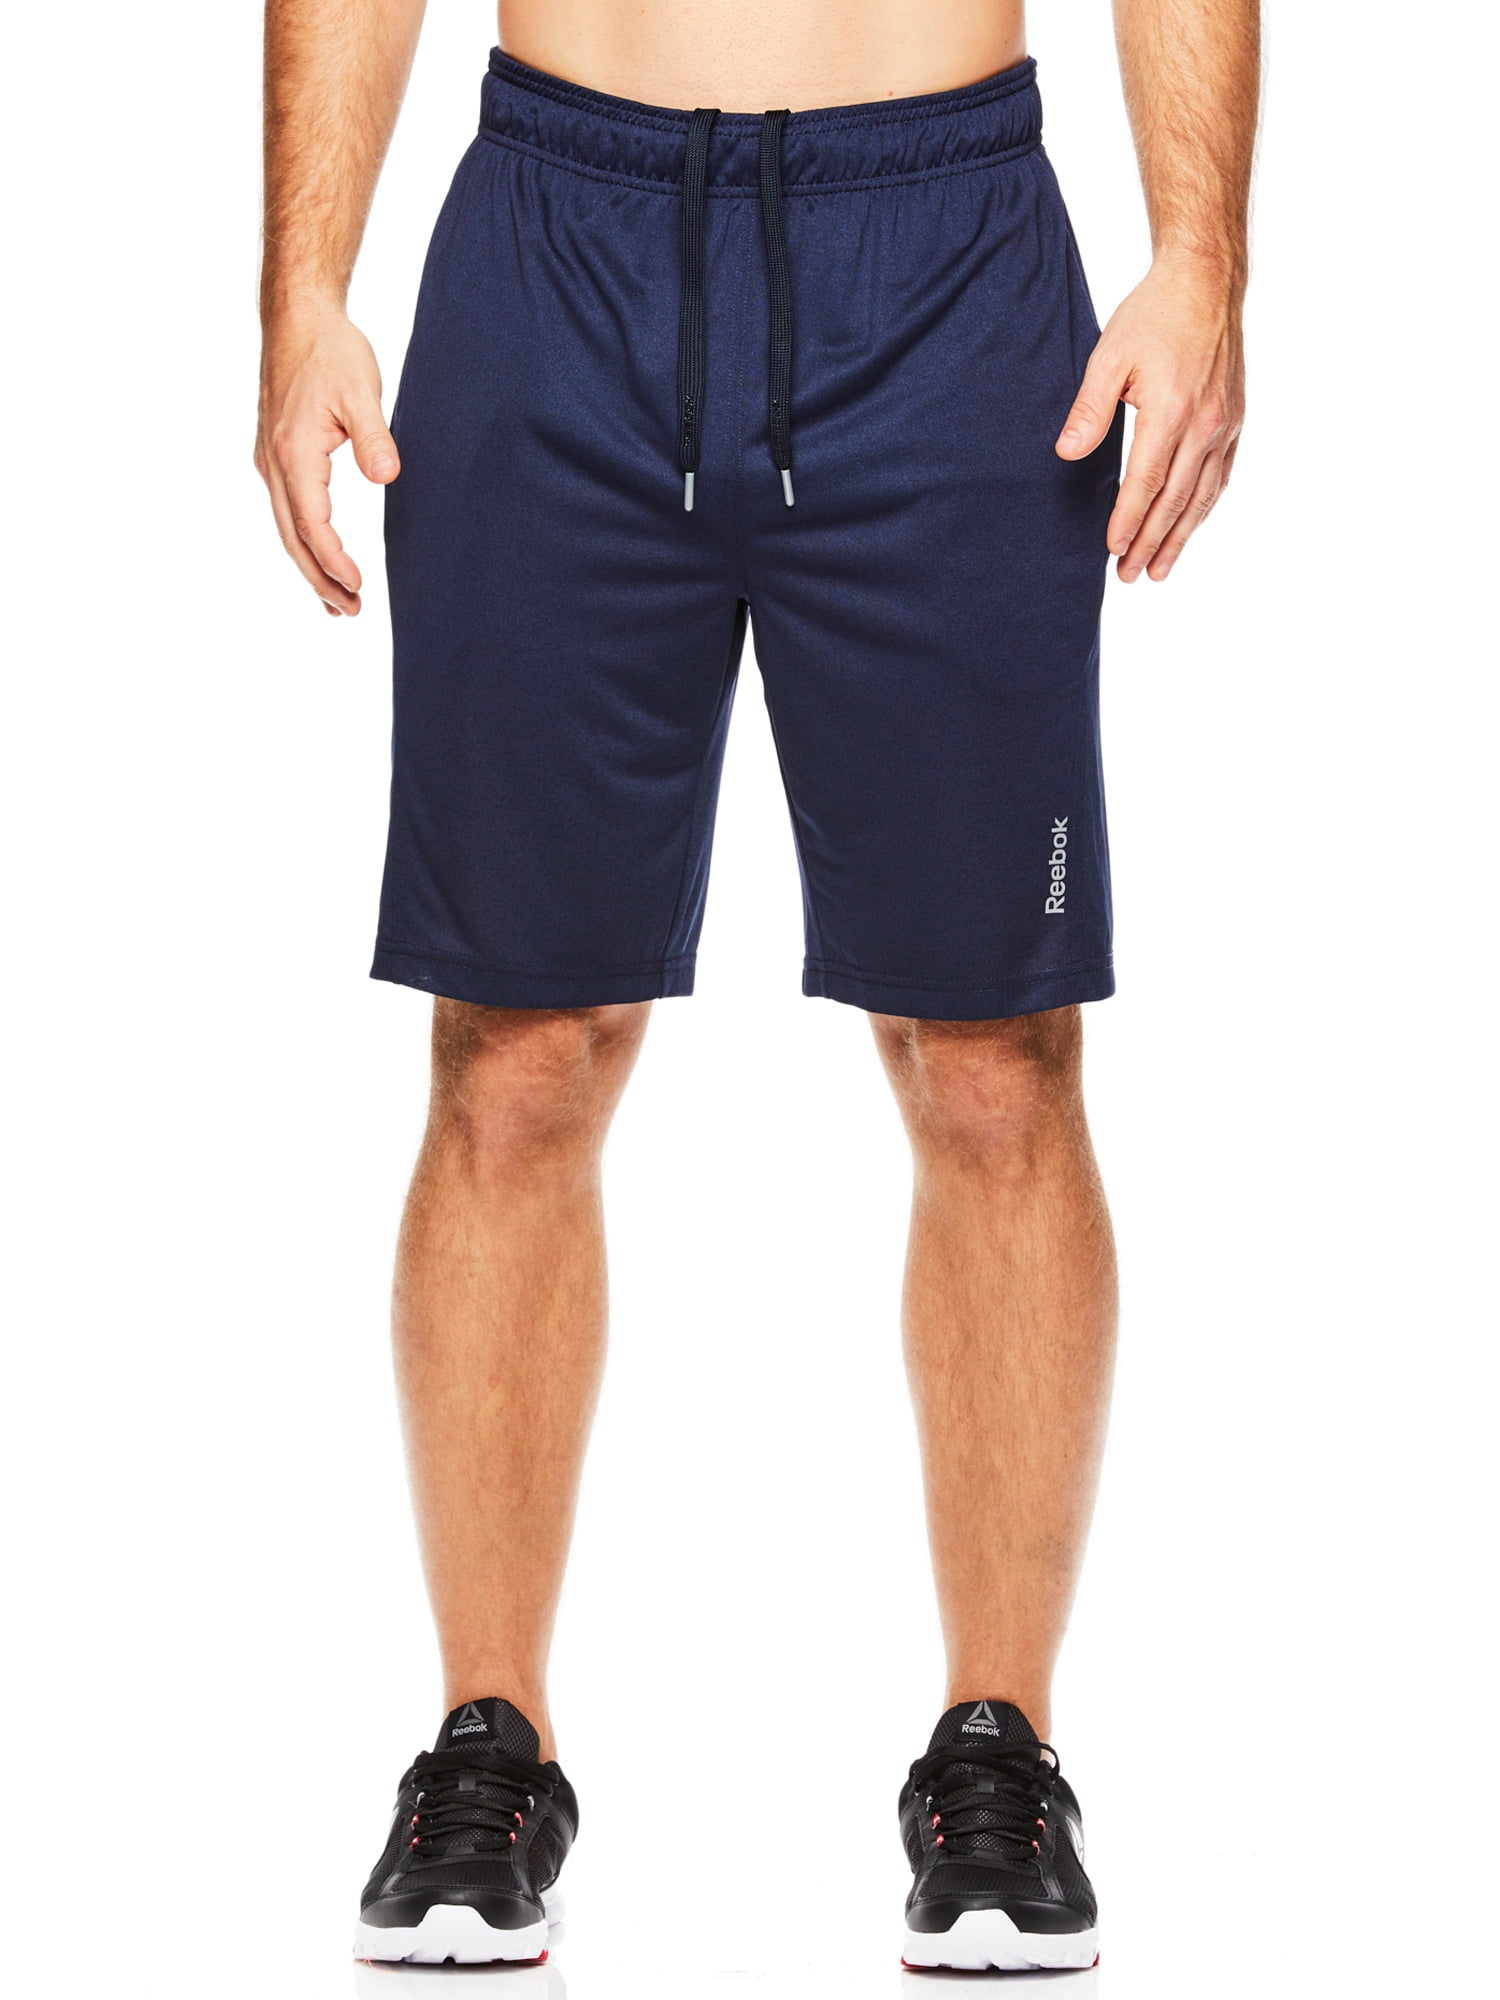 Reebok Men's Fireball Shorts - Walmart.com